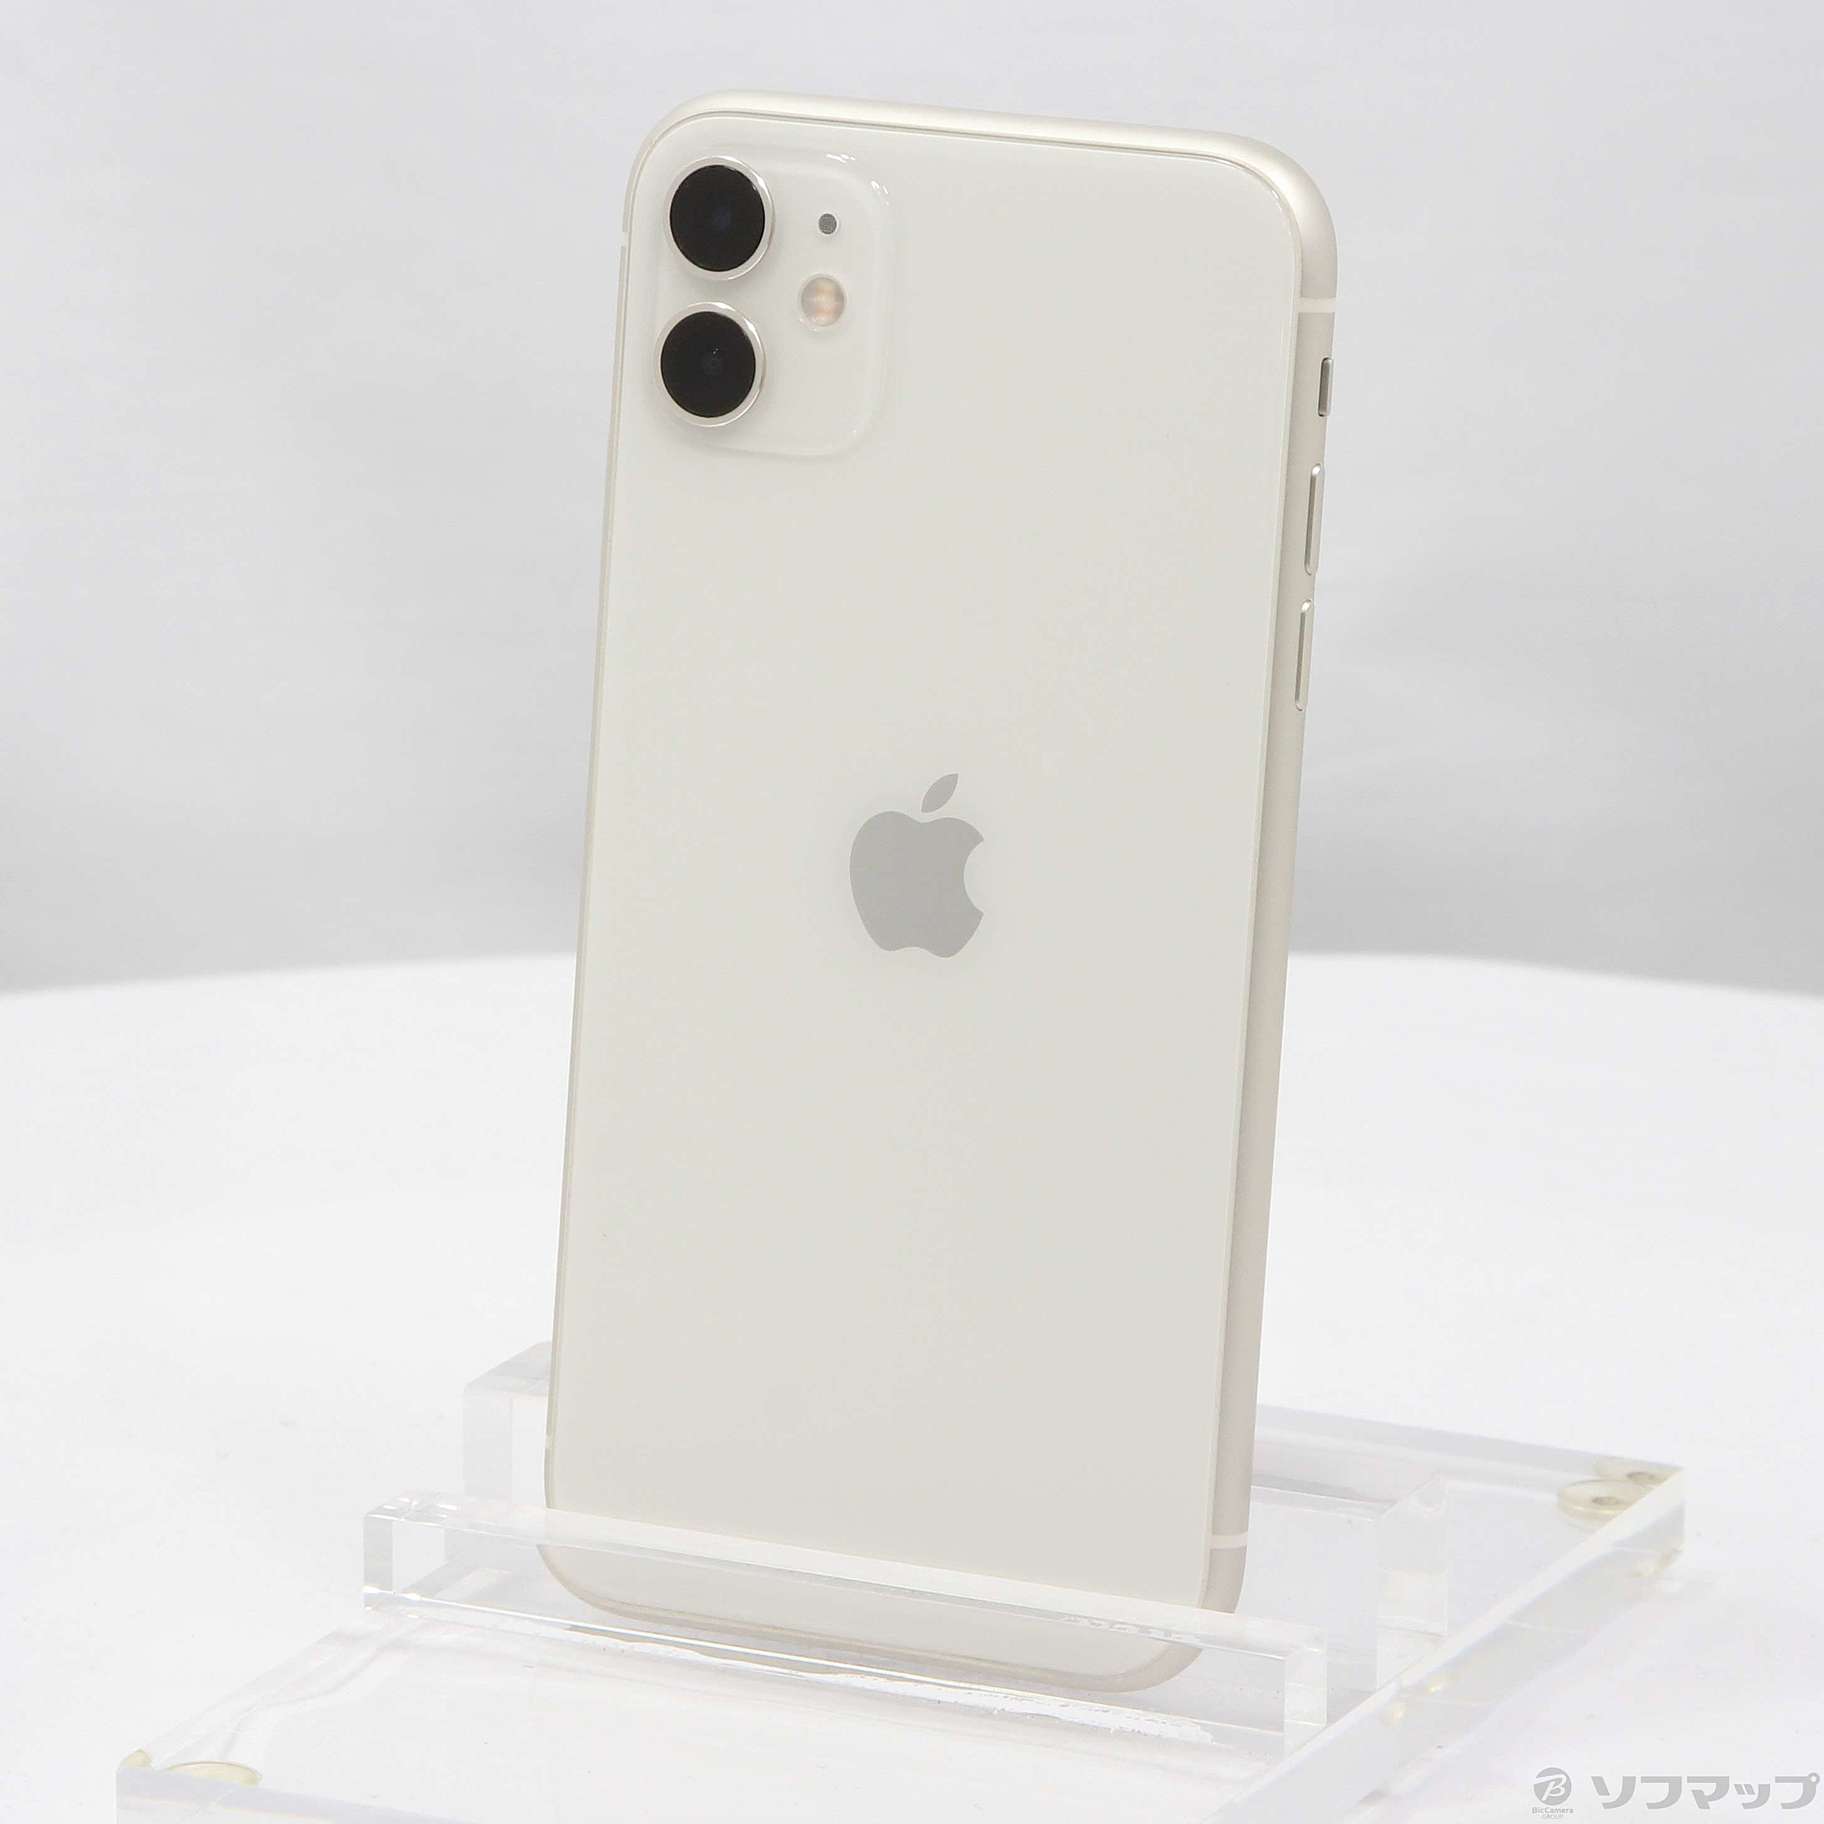 iPhone 11 白 64gb 新品 - スマートフォン本体